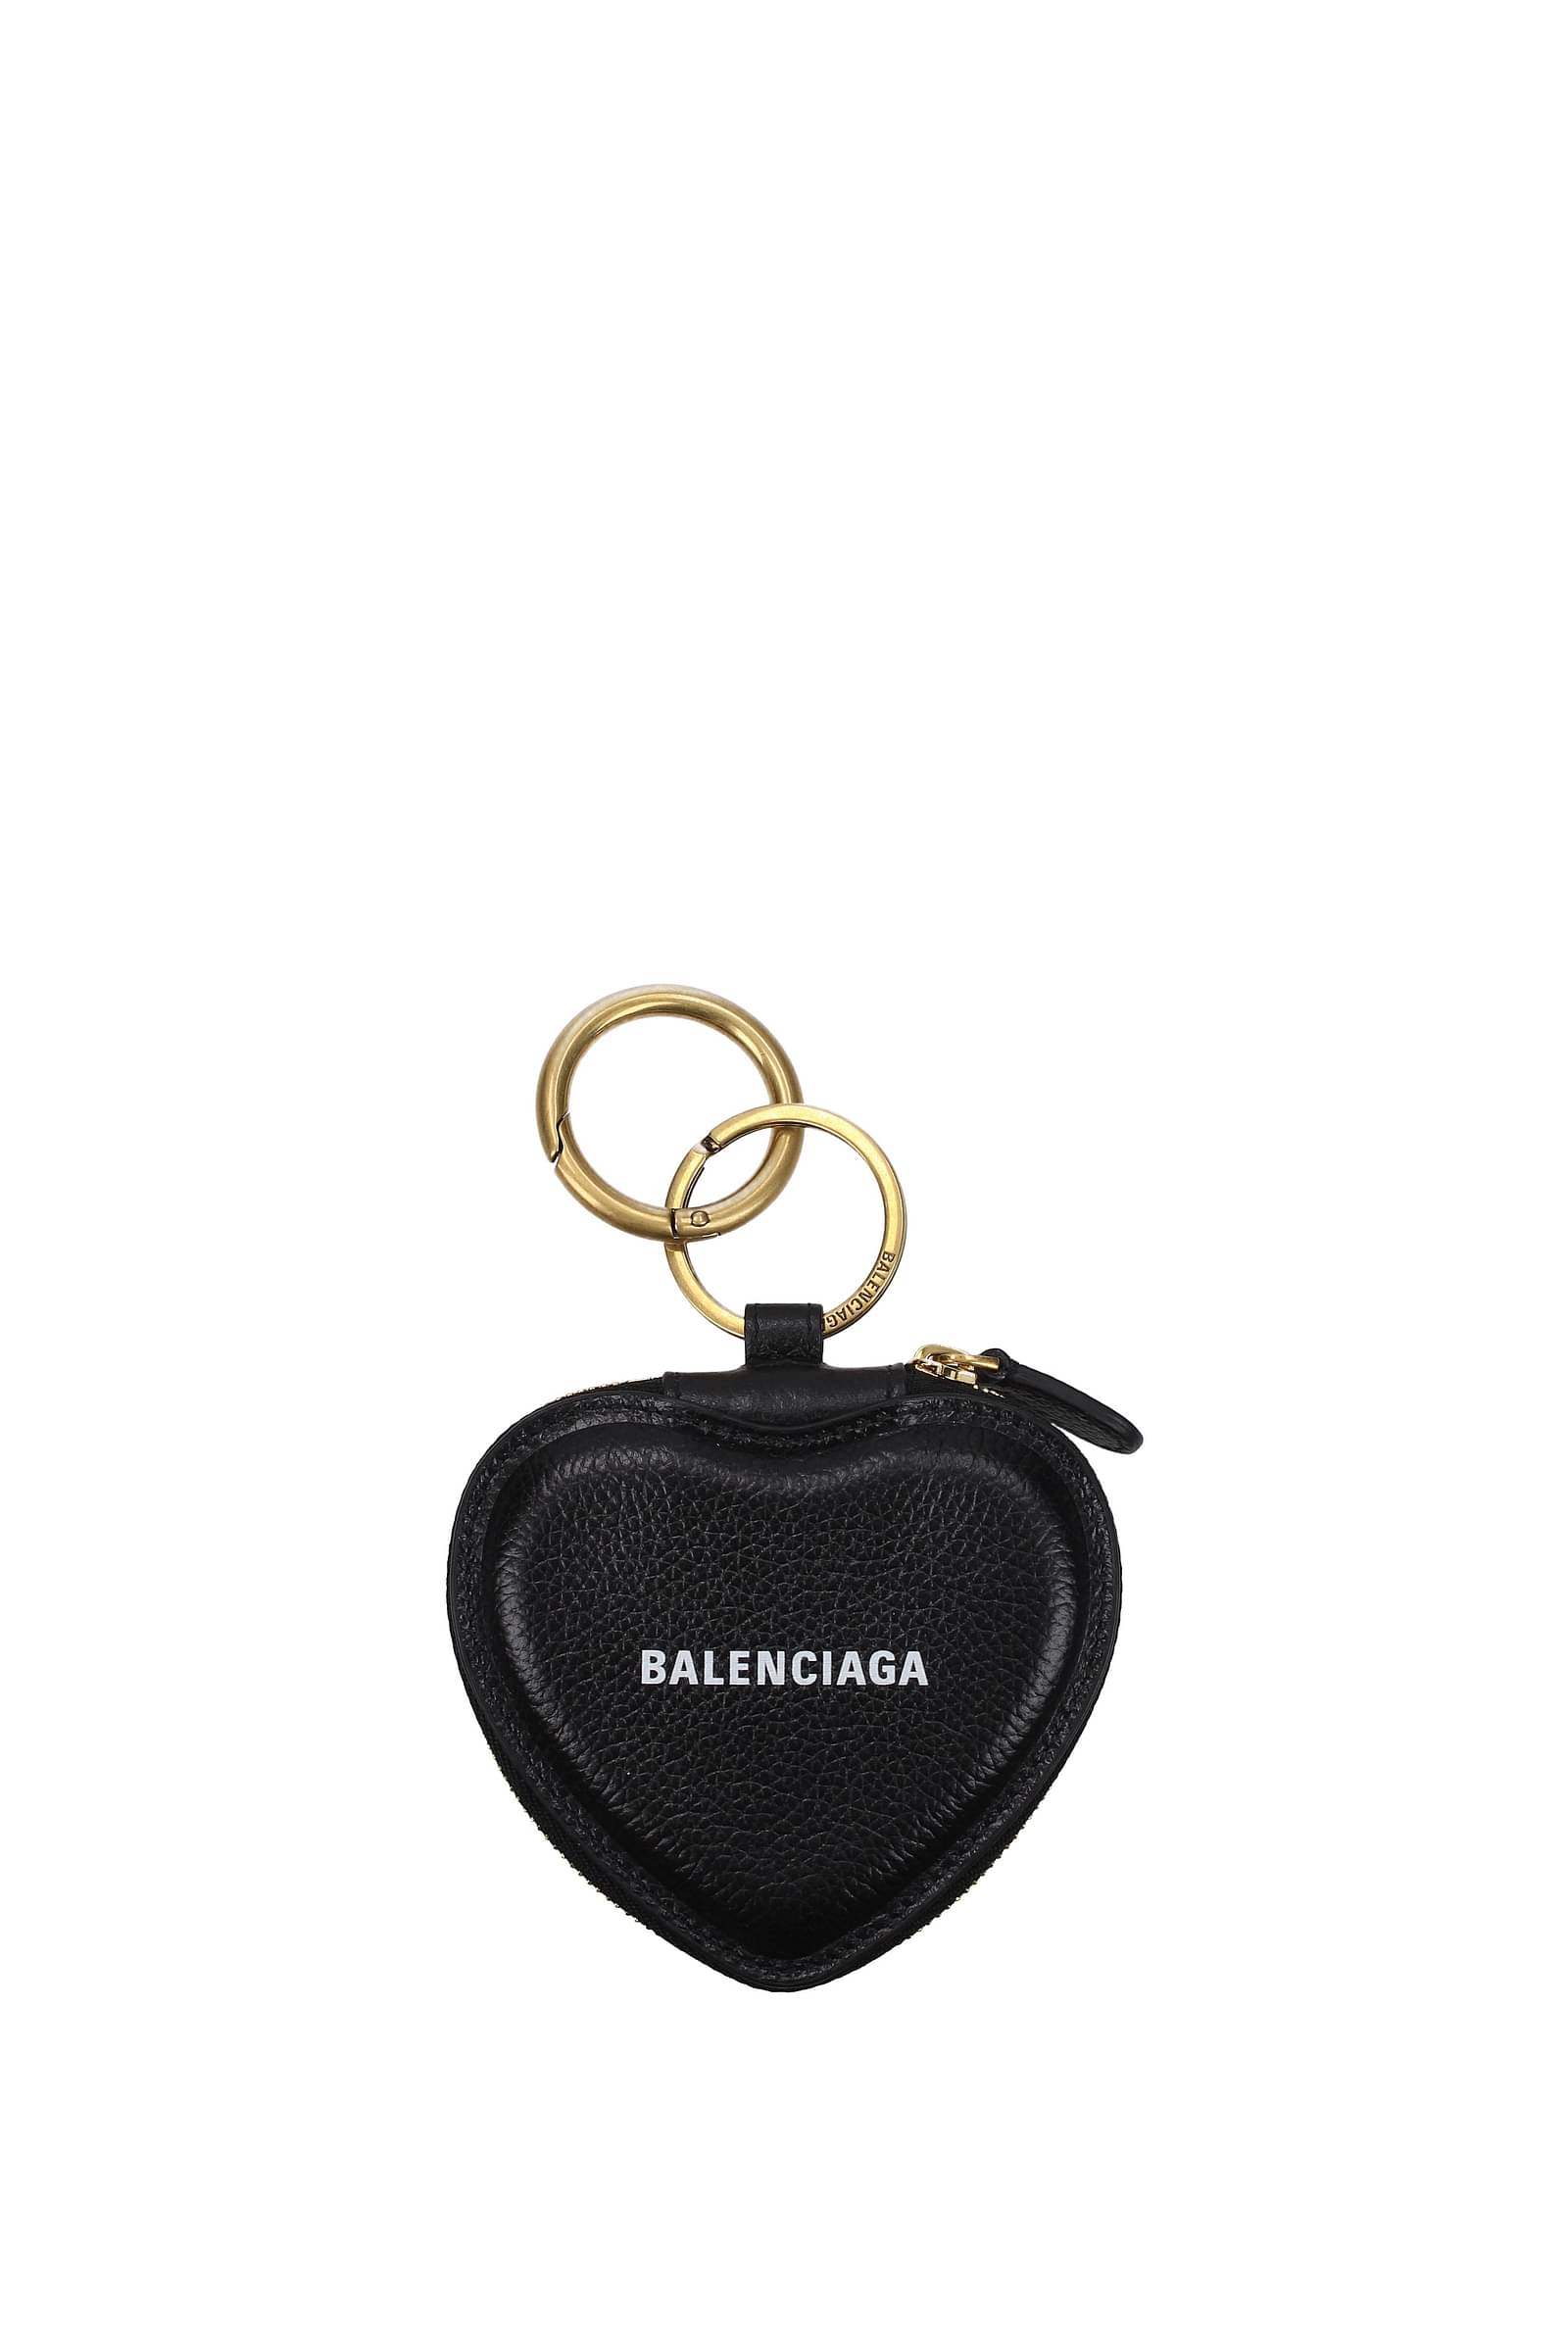 Balenciaga Spring 2024 Show Invite Is a Gold Key  Hypebeast